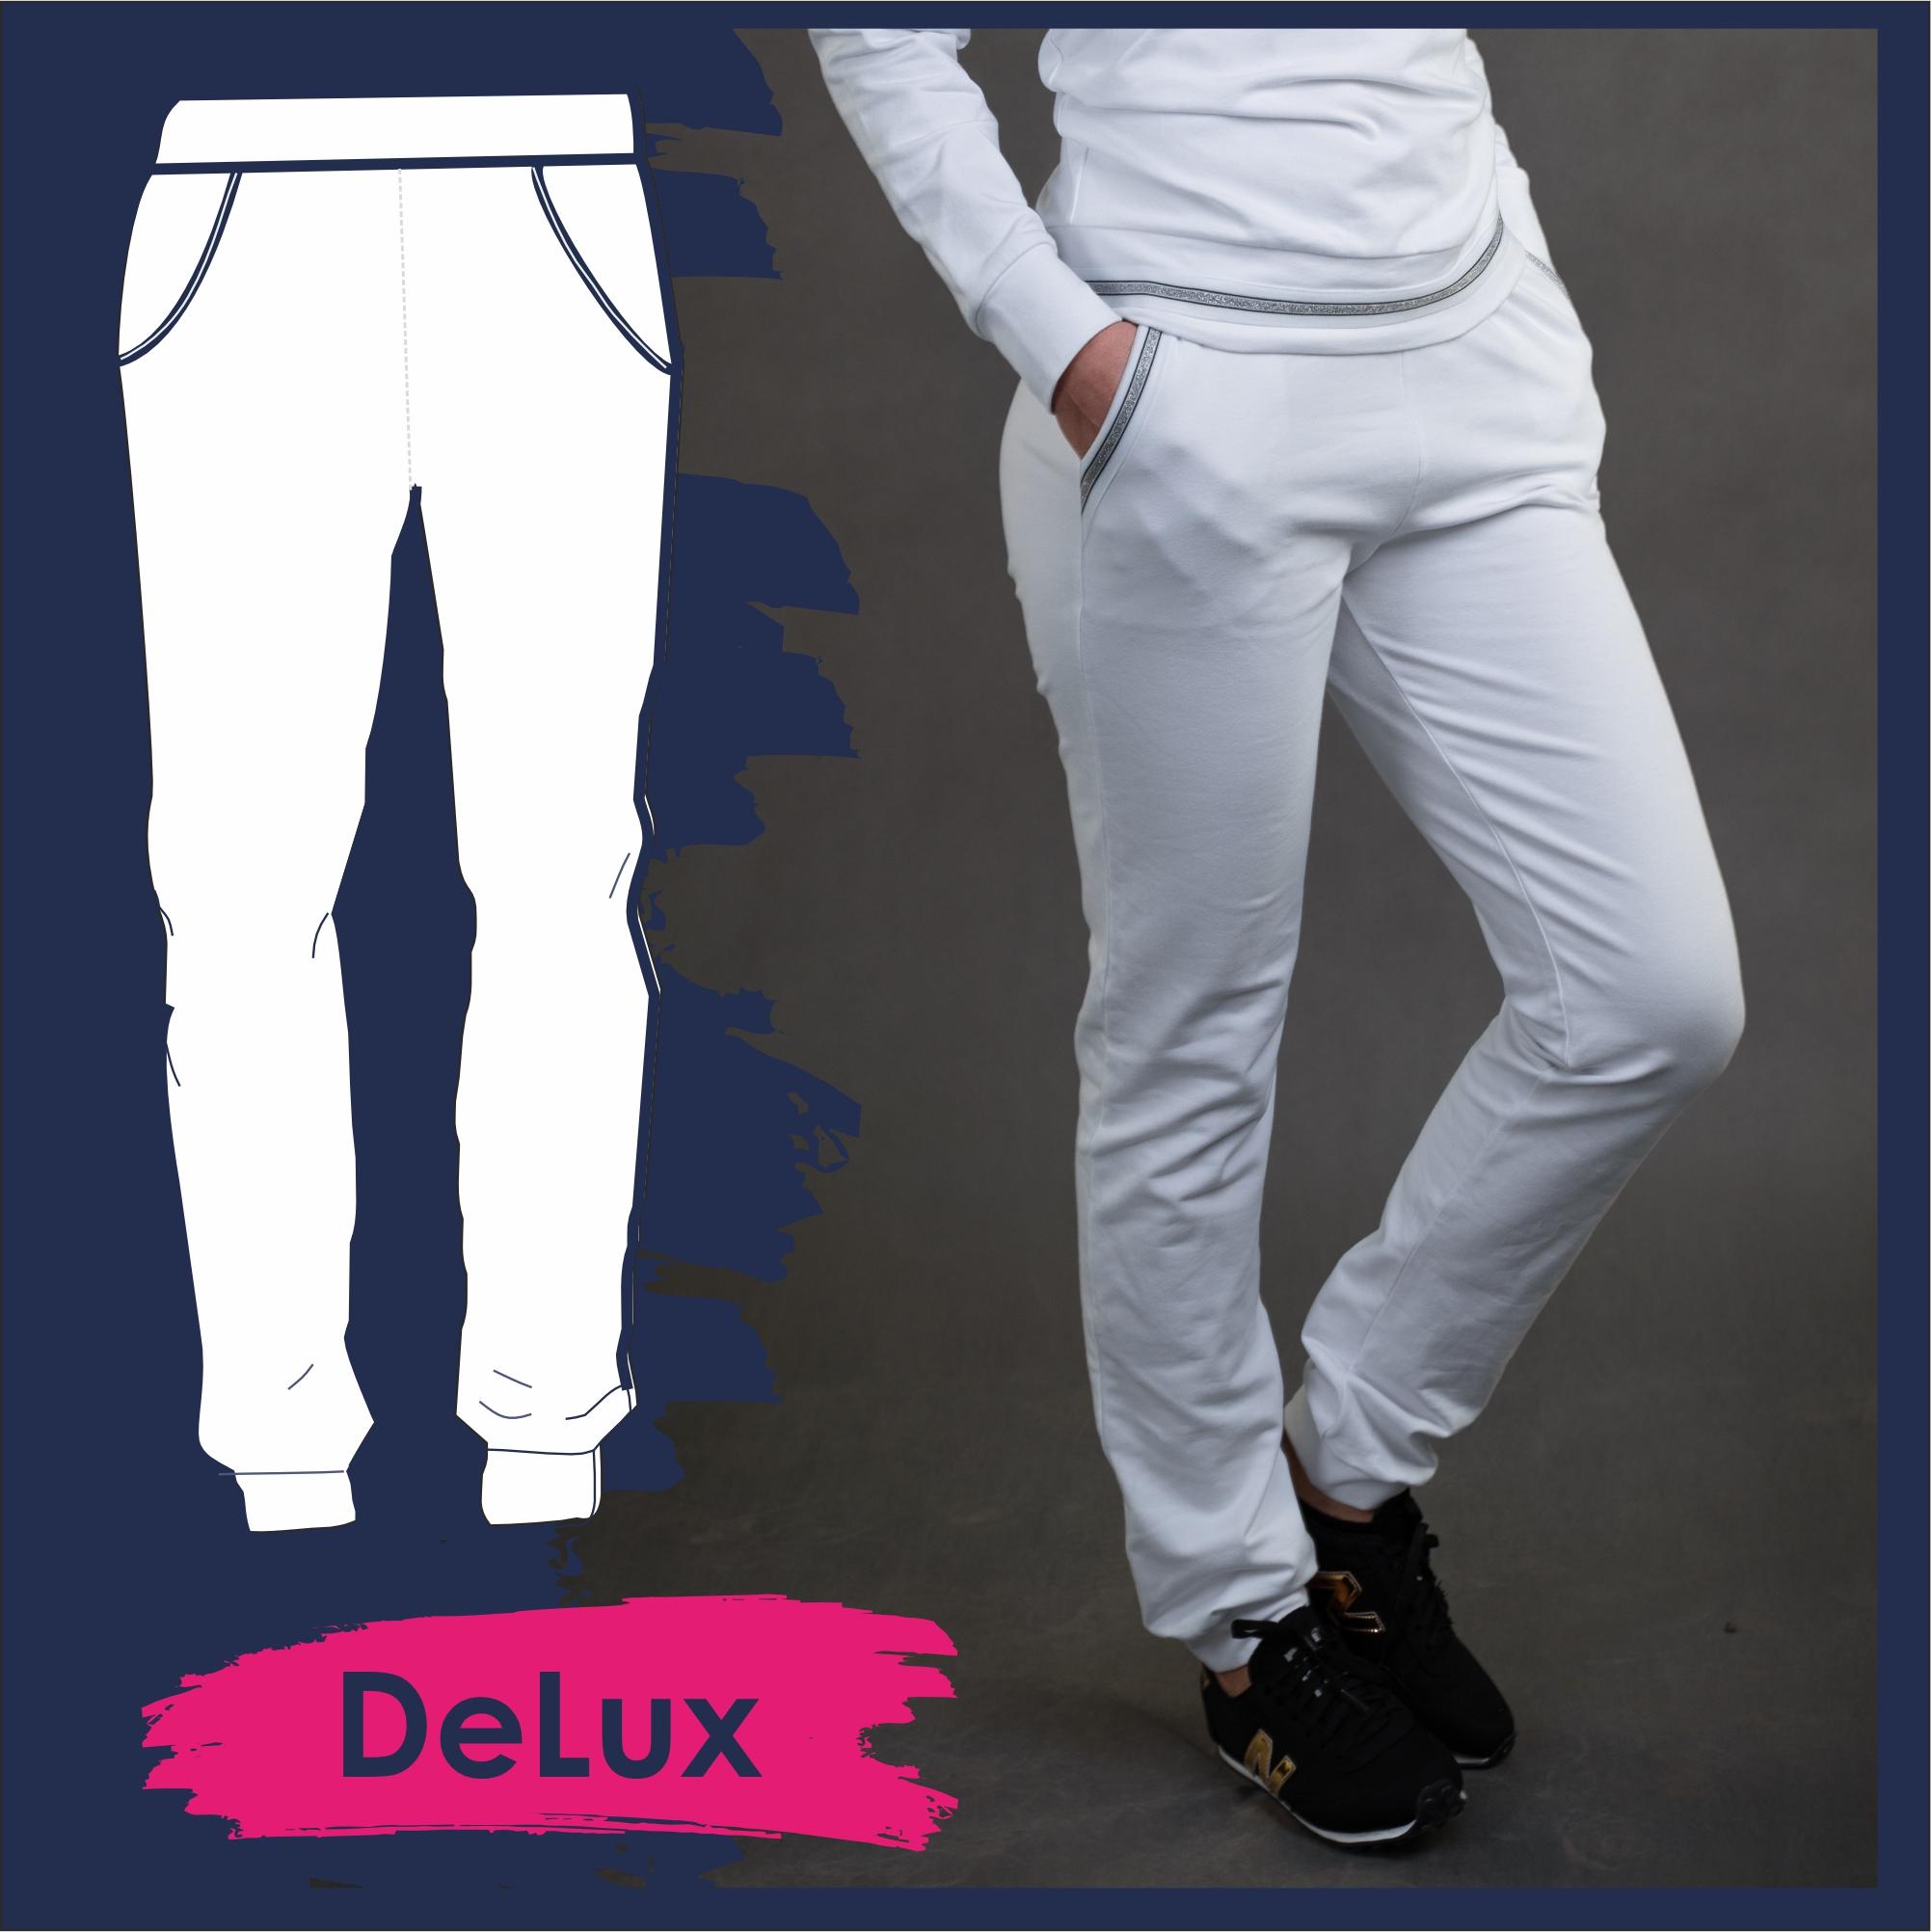 Women’s trousers (DeLux)